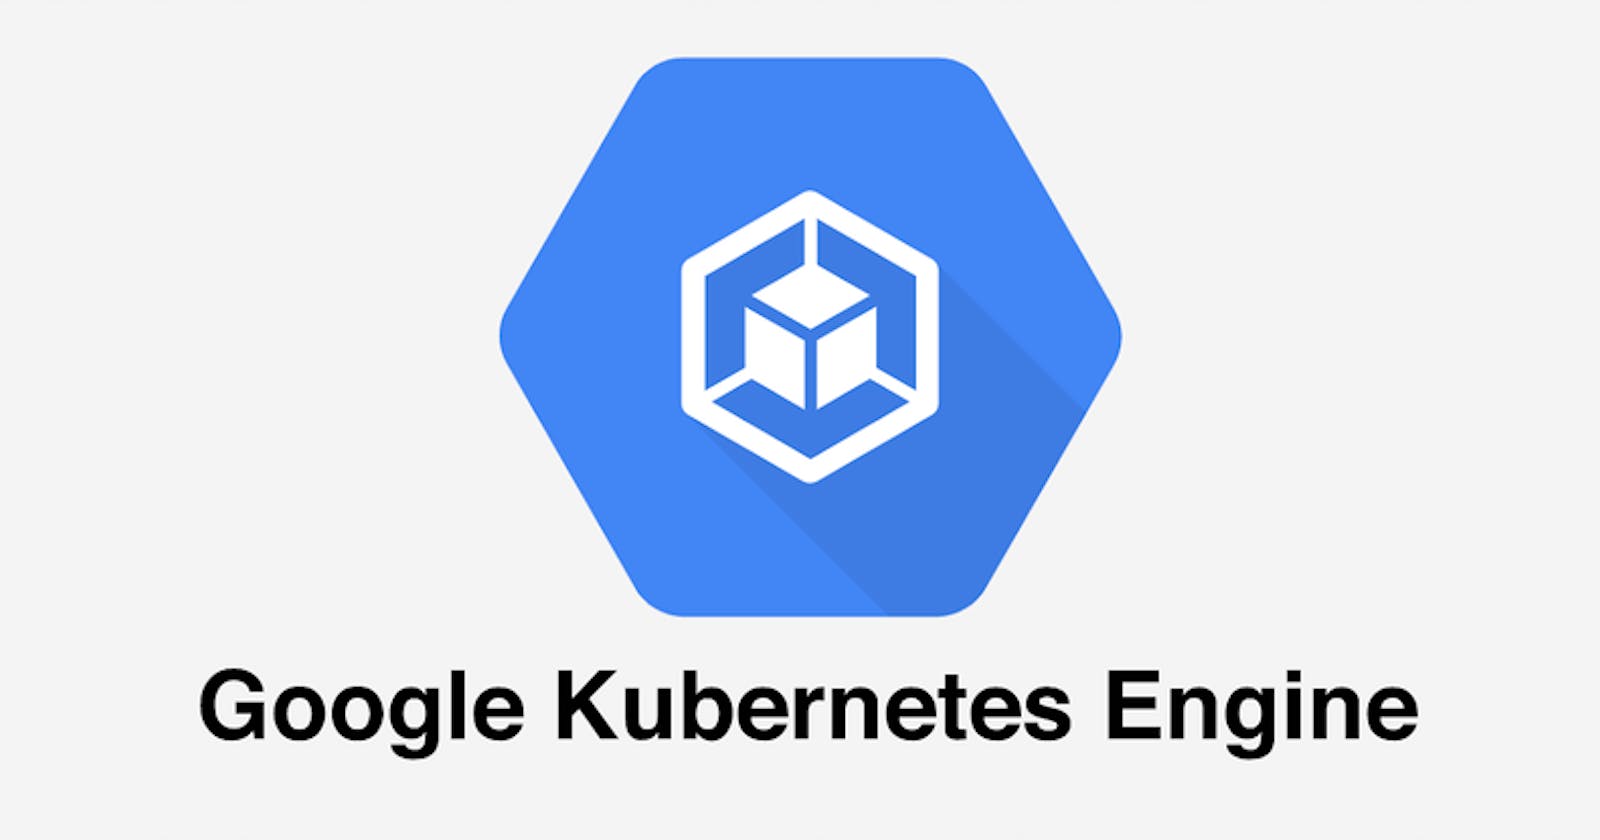 16. Orchestration: Google Kubernetes Engine